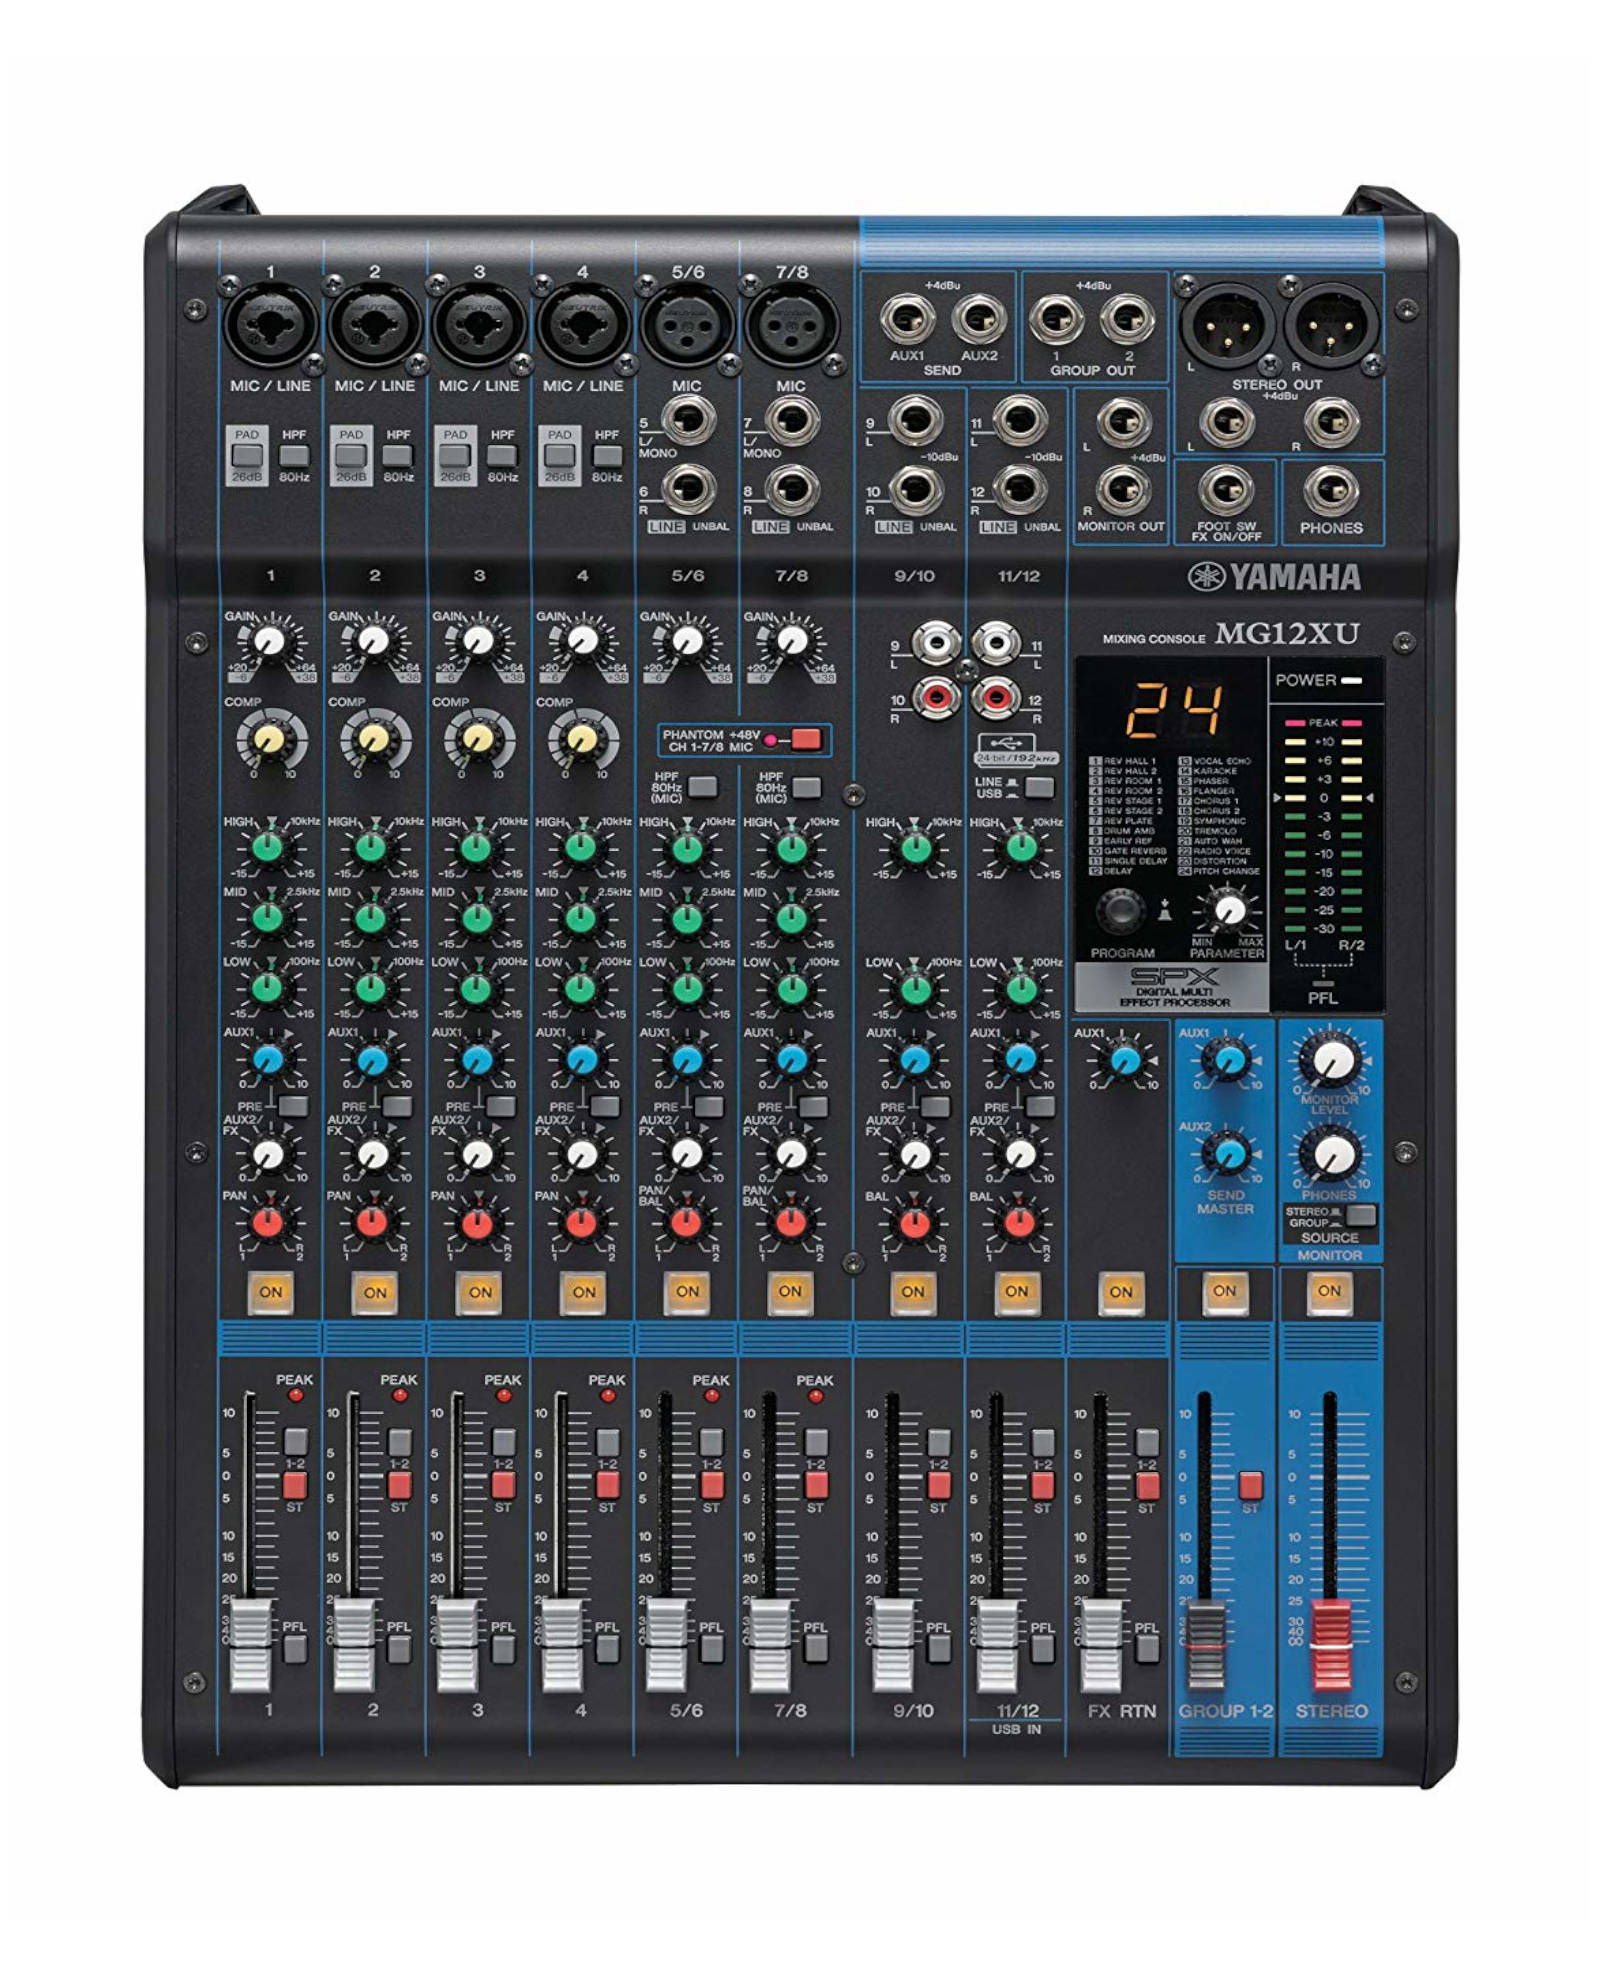 Yamaha Mg12xu Mixing Console